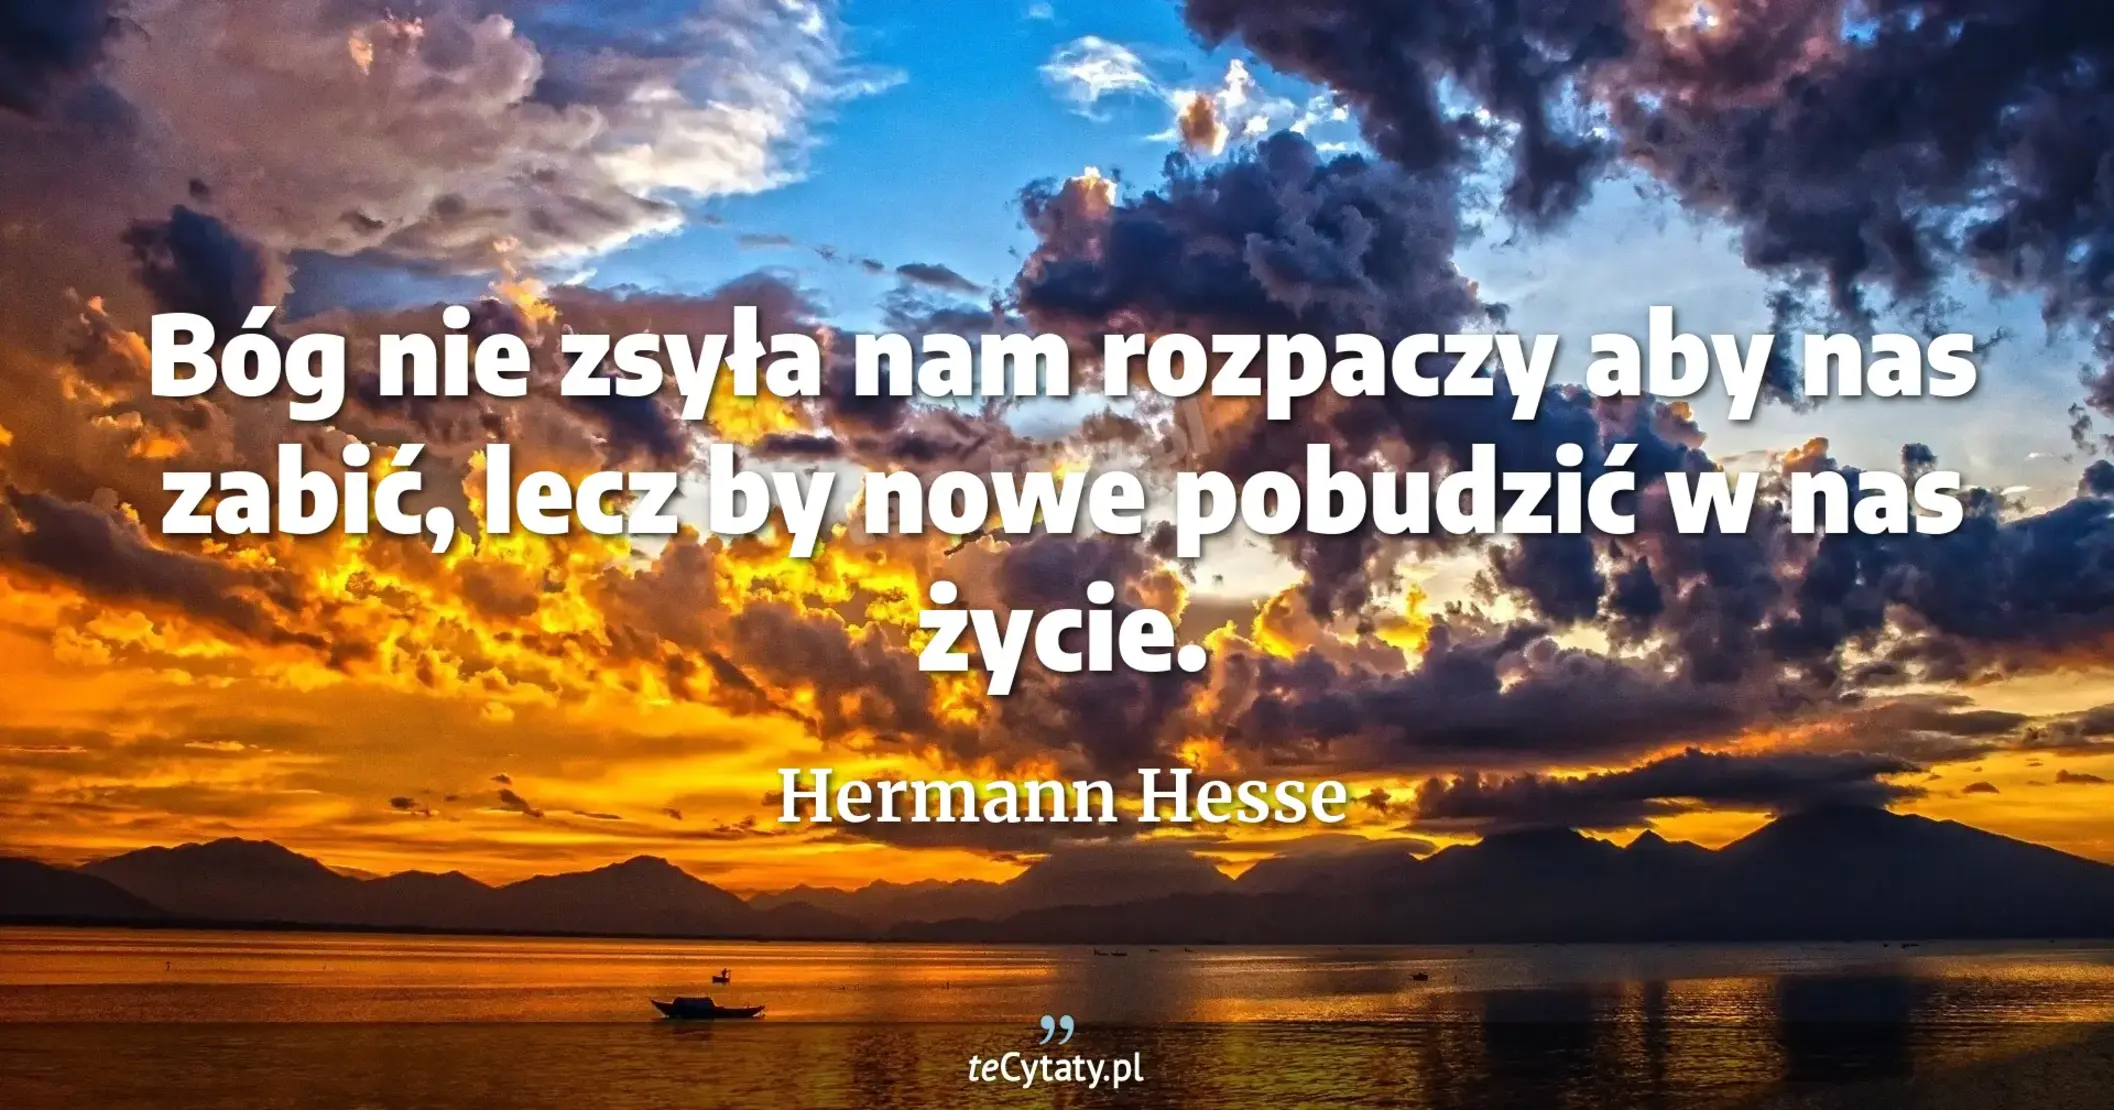 Bóg nie zsyła nam rozpaczy aby nas zabić, lecz by nowe pobudzić w nas życie. - Hermann Hesse